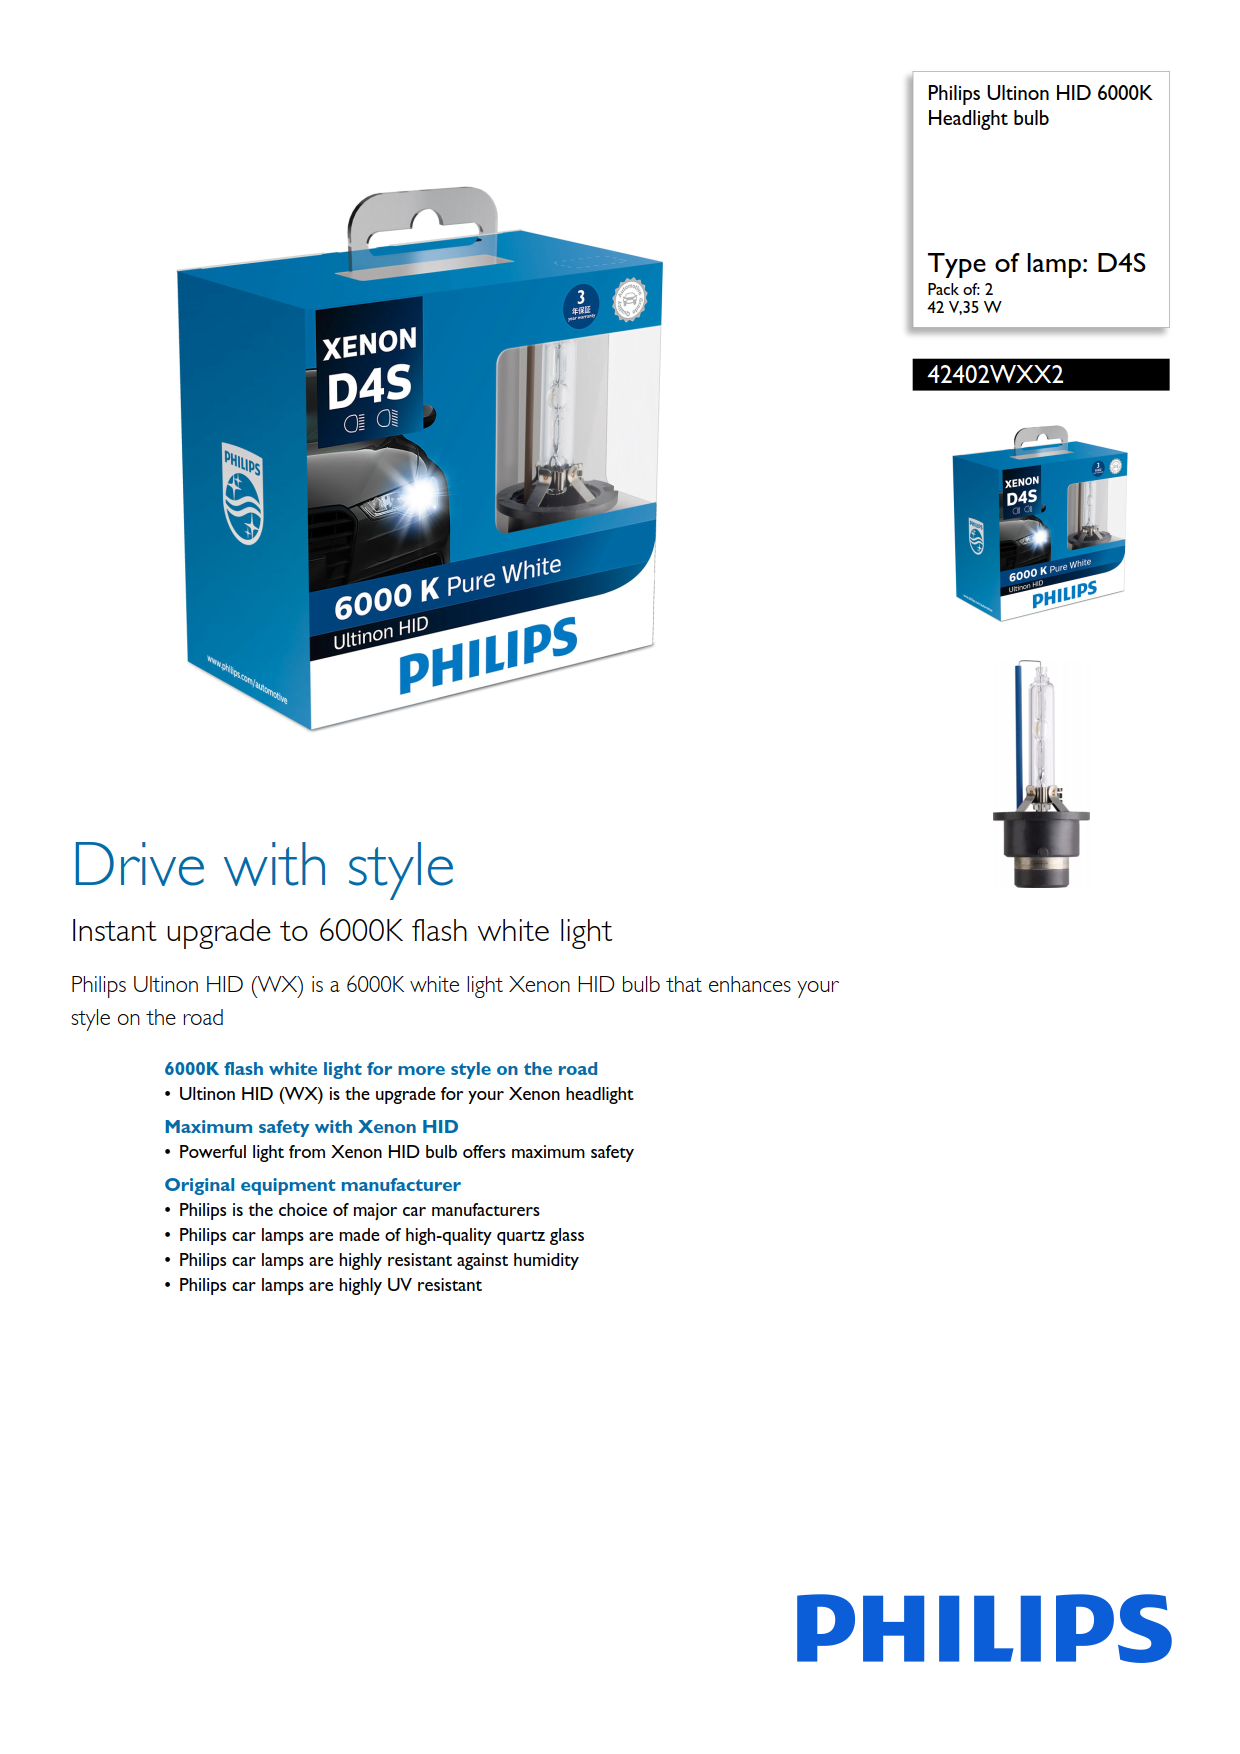 PHILIPS Xenos Ultinon HID Headlight bulb D4S 42V 35W 42402WXX2 P32d-5 867000100236